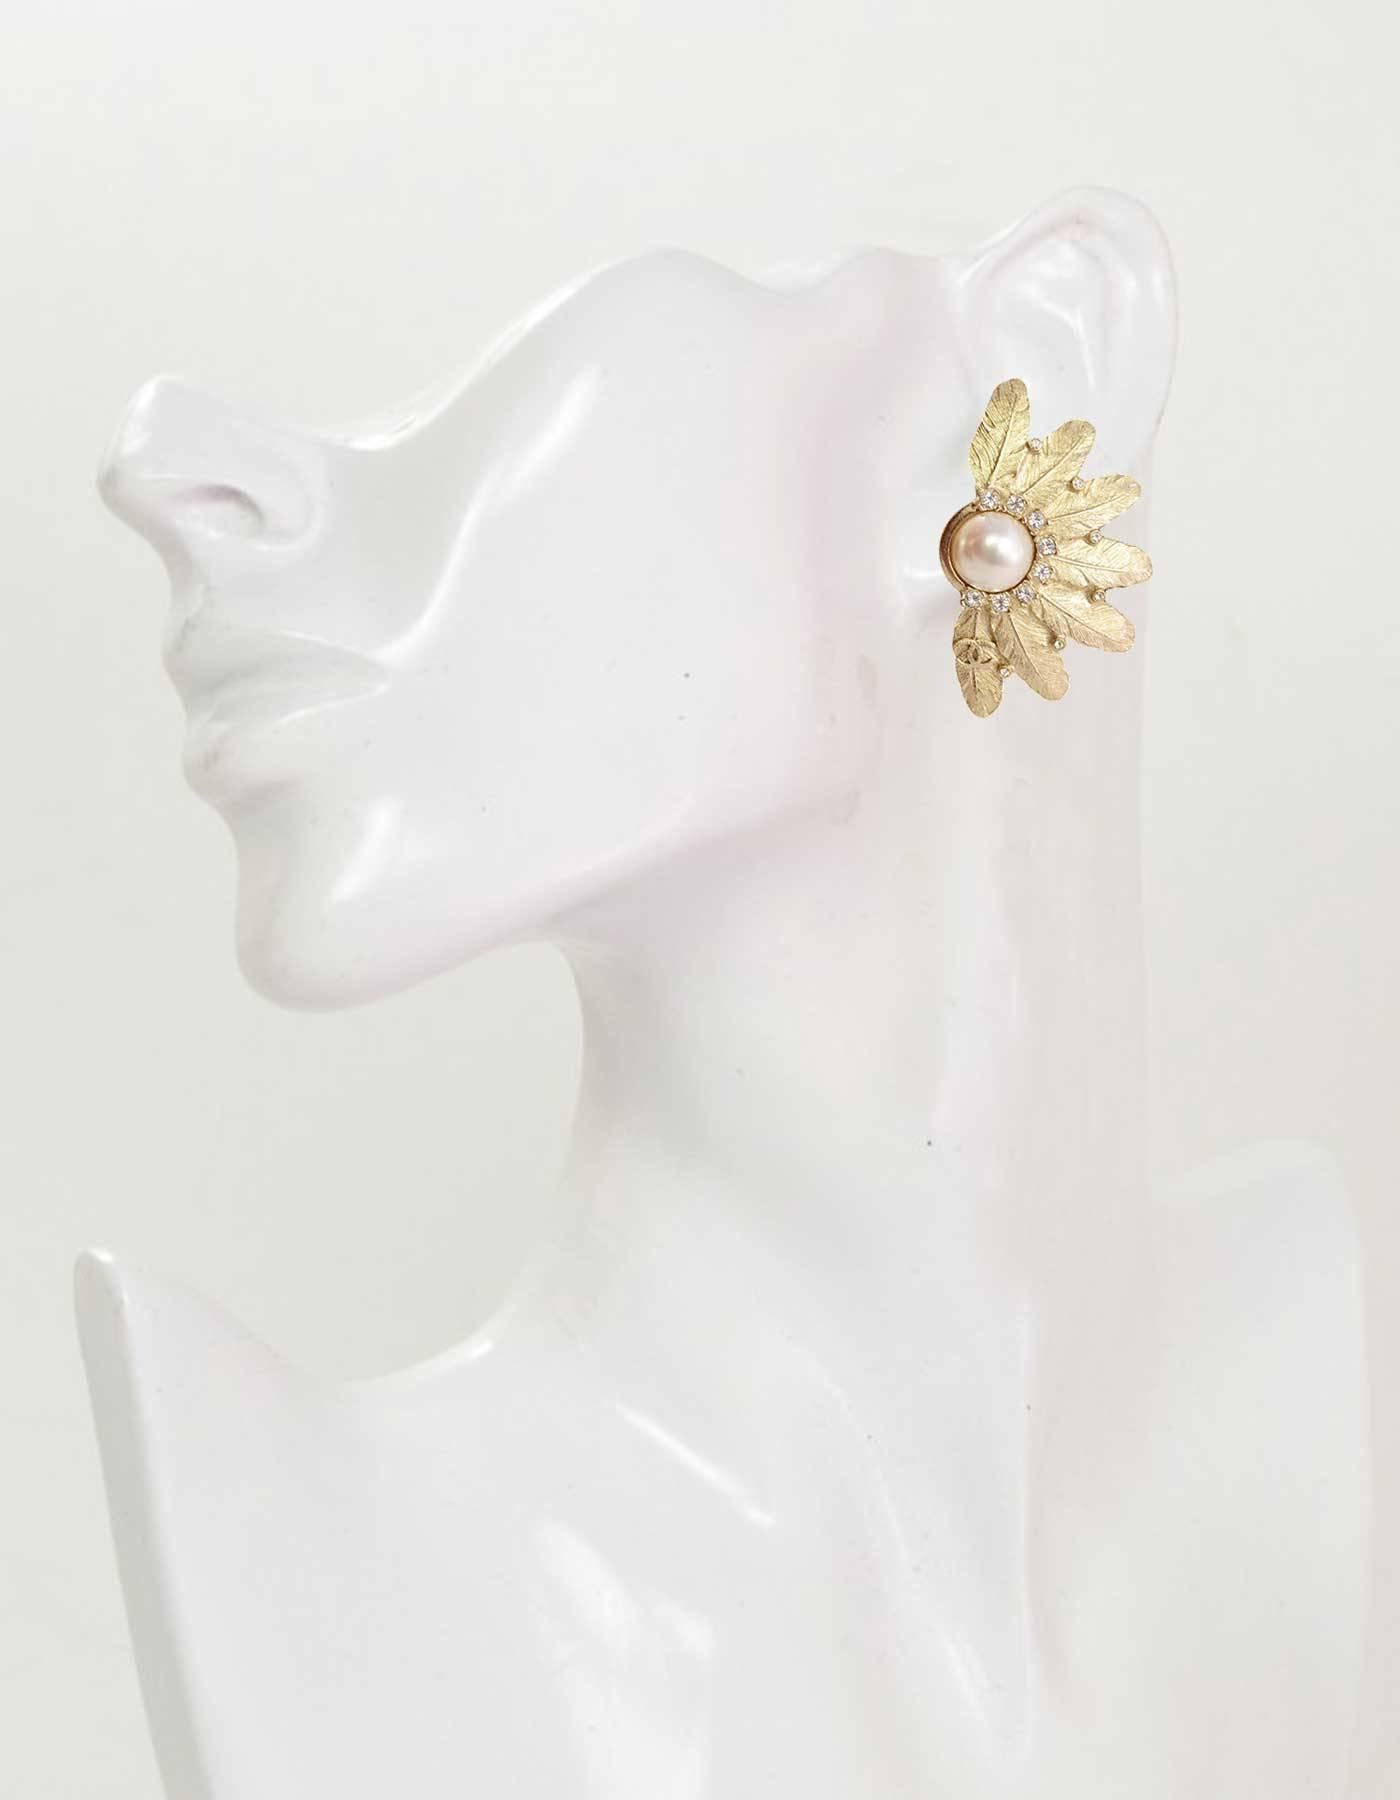 Chanel Pale Gold Pearl Cuff Bracelet & Clip On Earrings Set 5